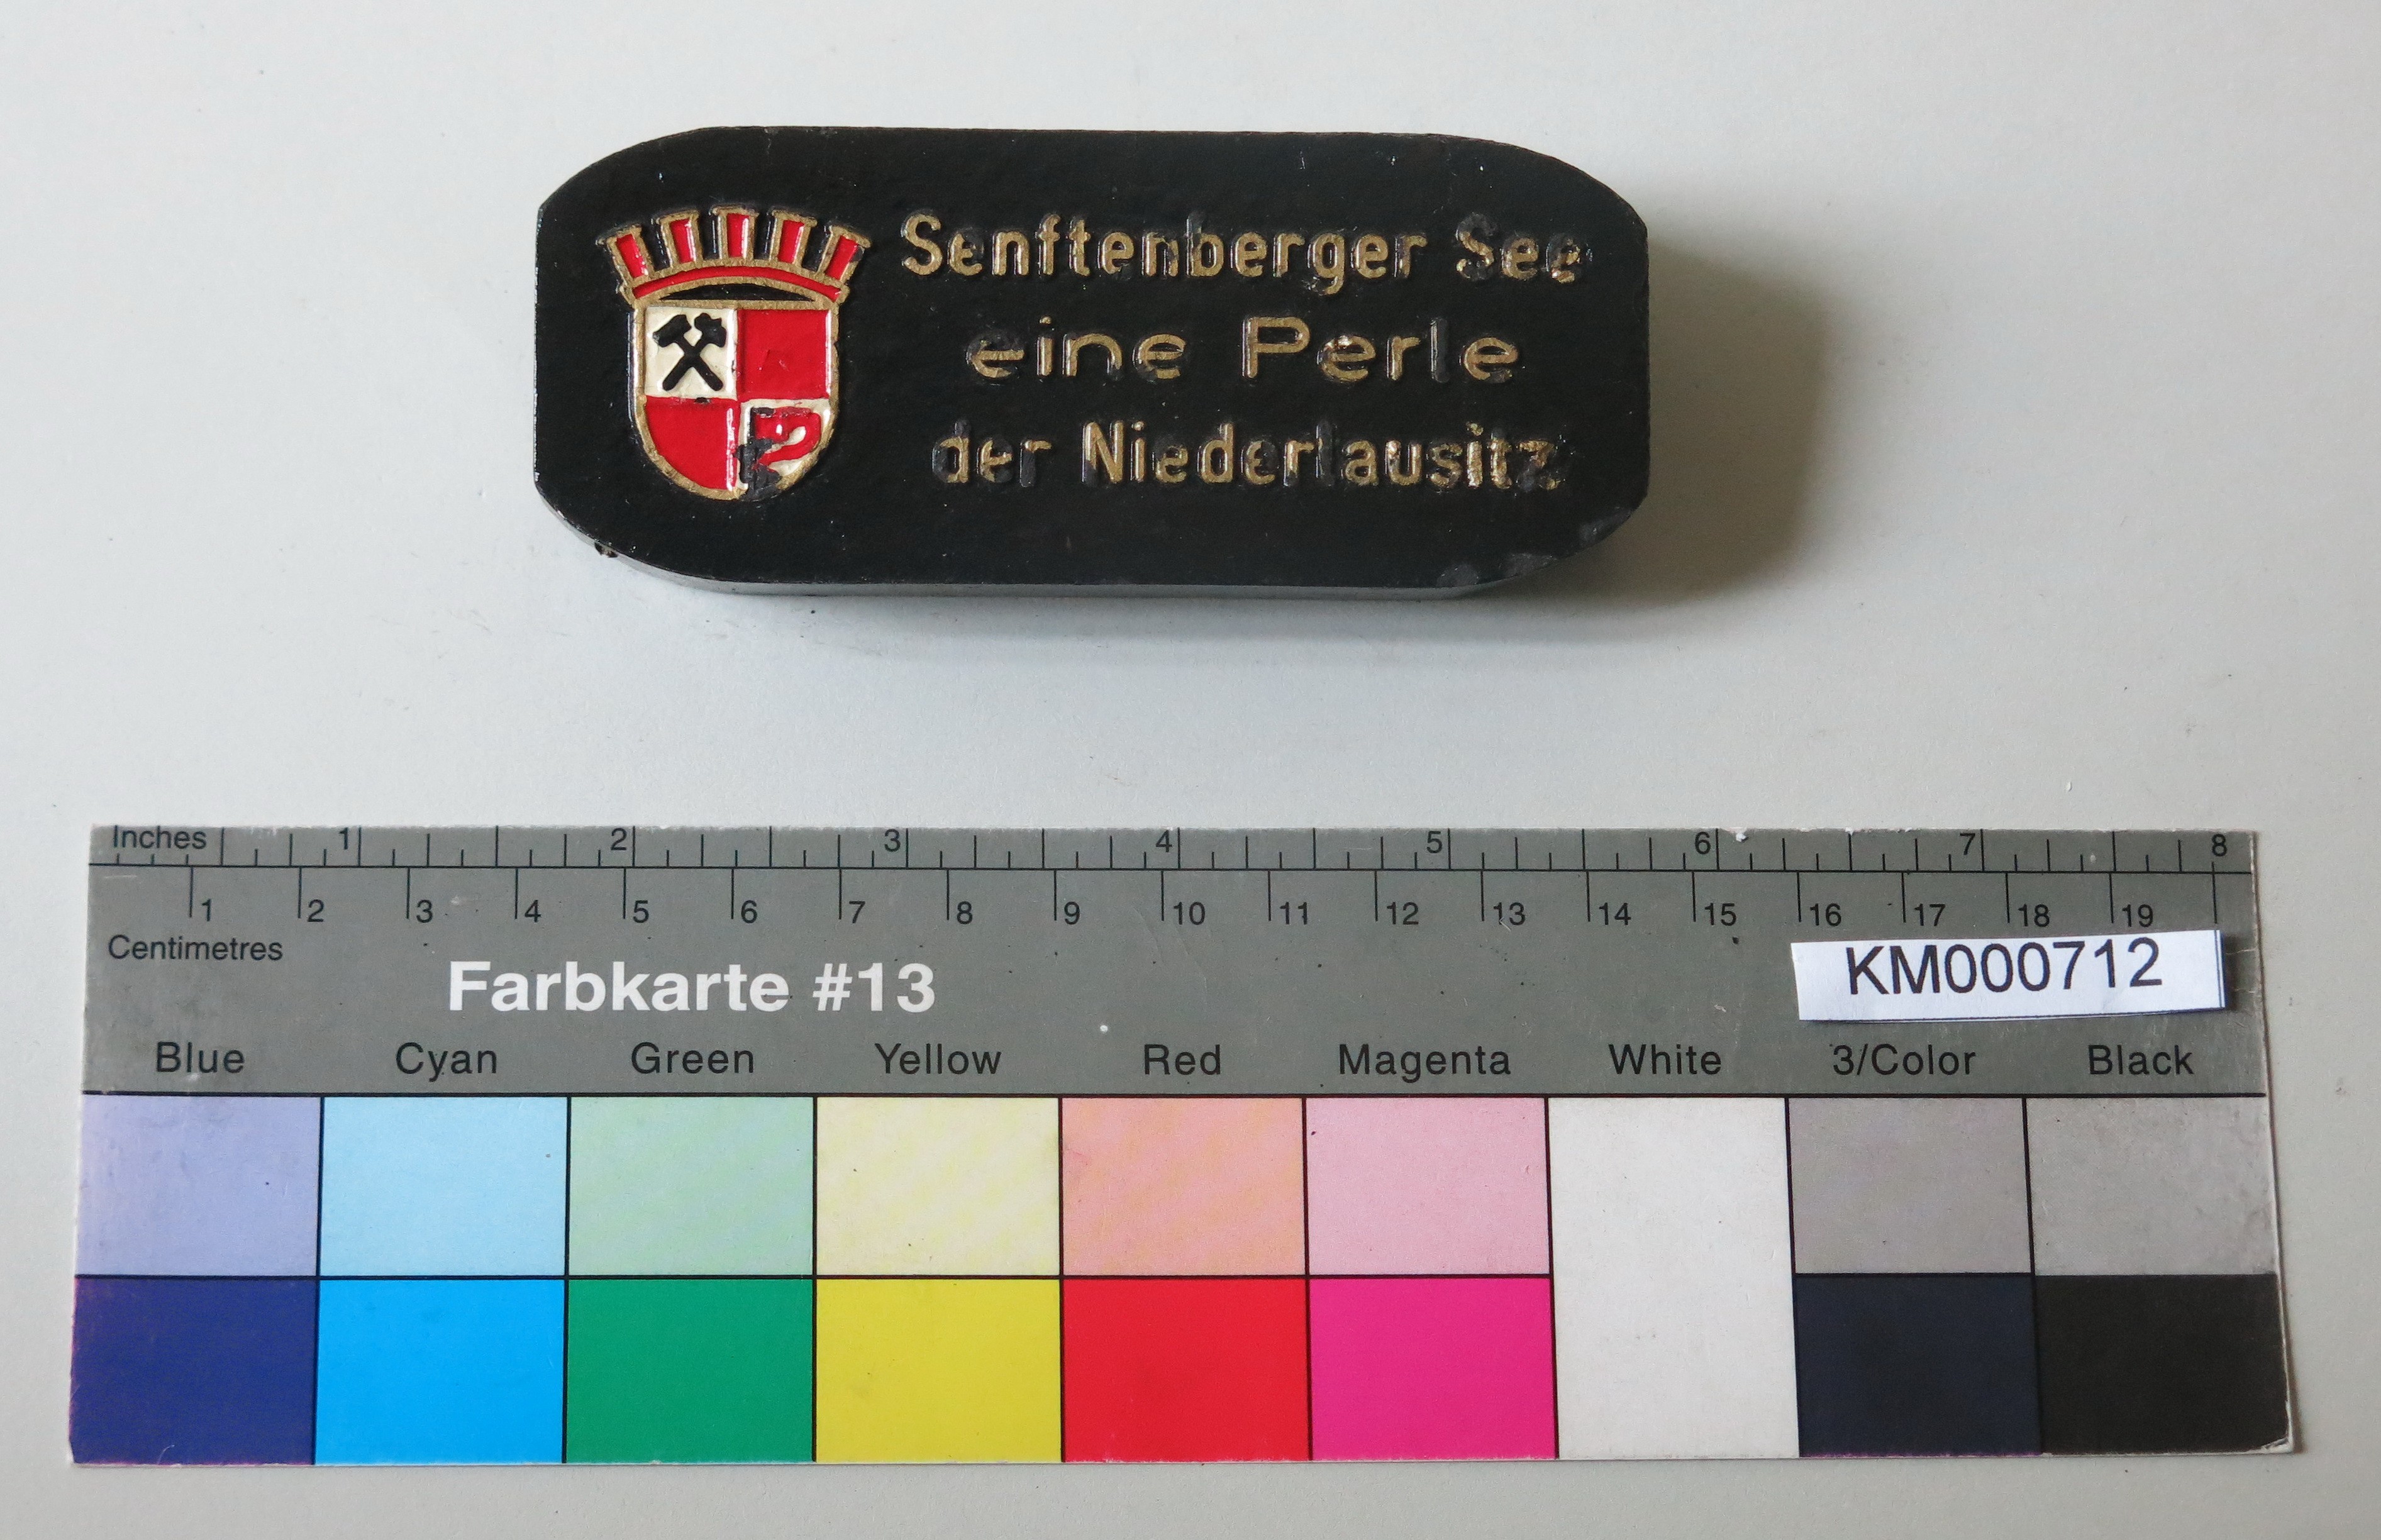 Zierbrikett "Senftenberger See eine Perle der Niederlausitz" (Energiefabrik Knappenrode CC BY-SA)